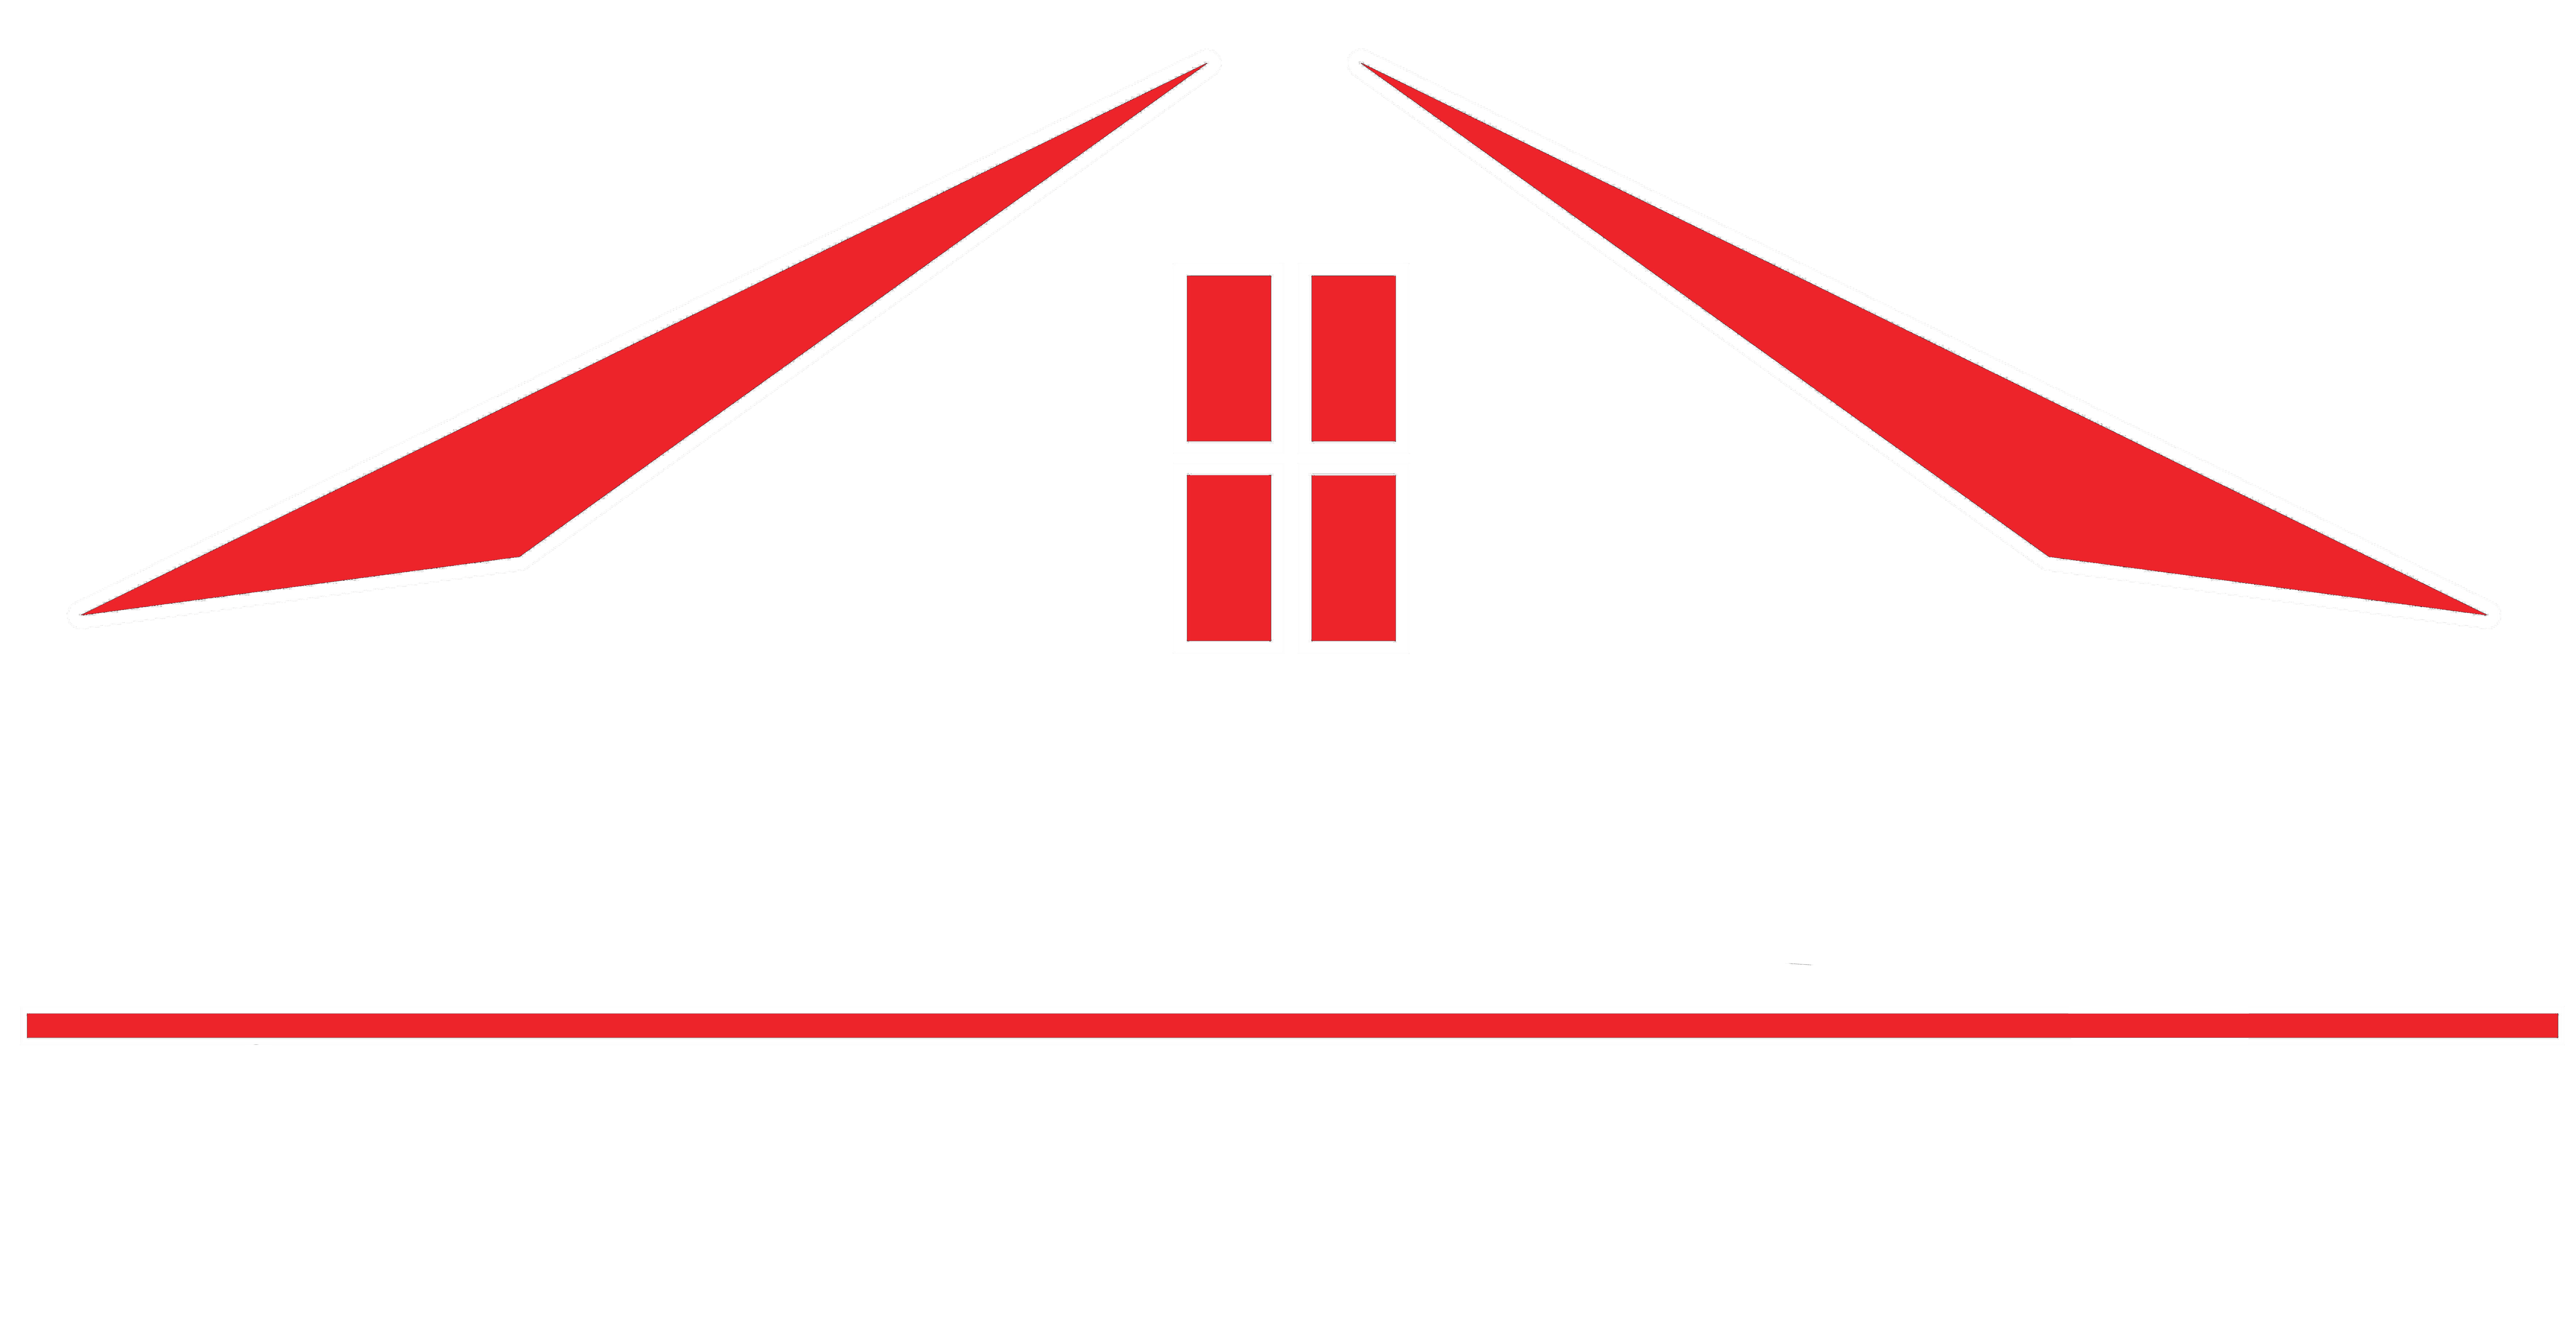 Shull Construction Salina, KS